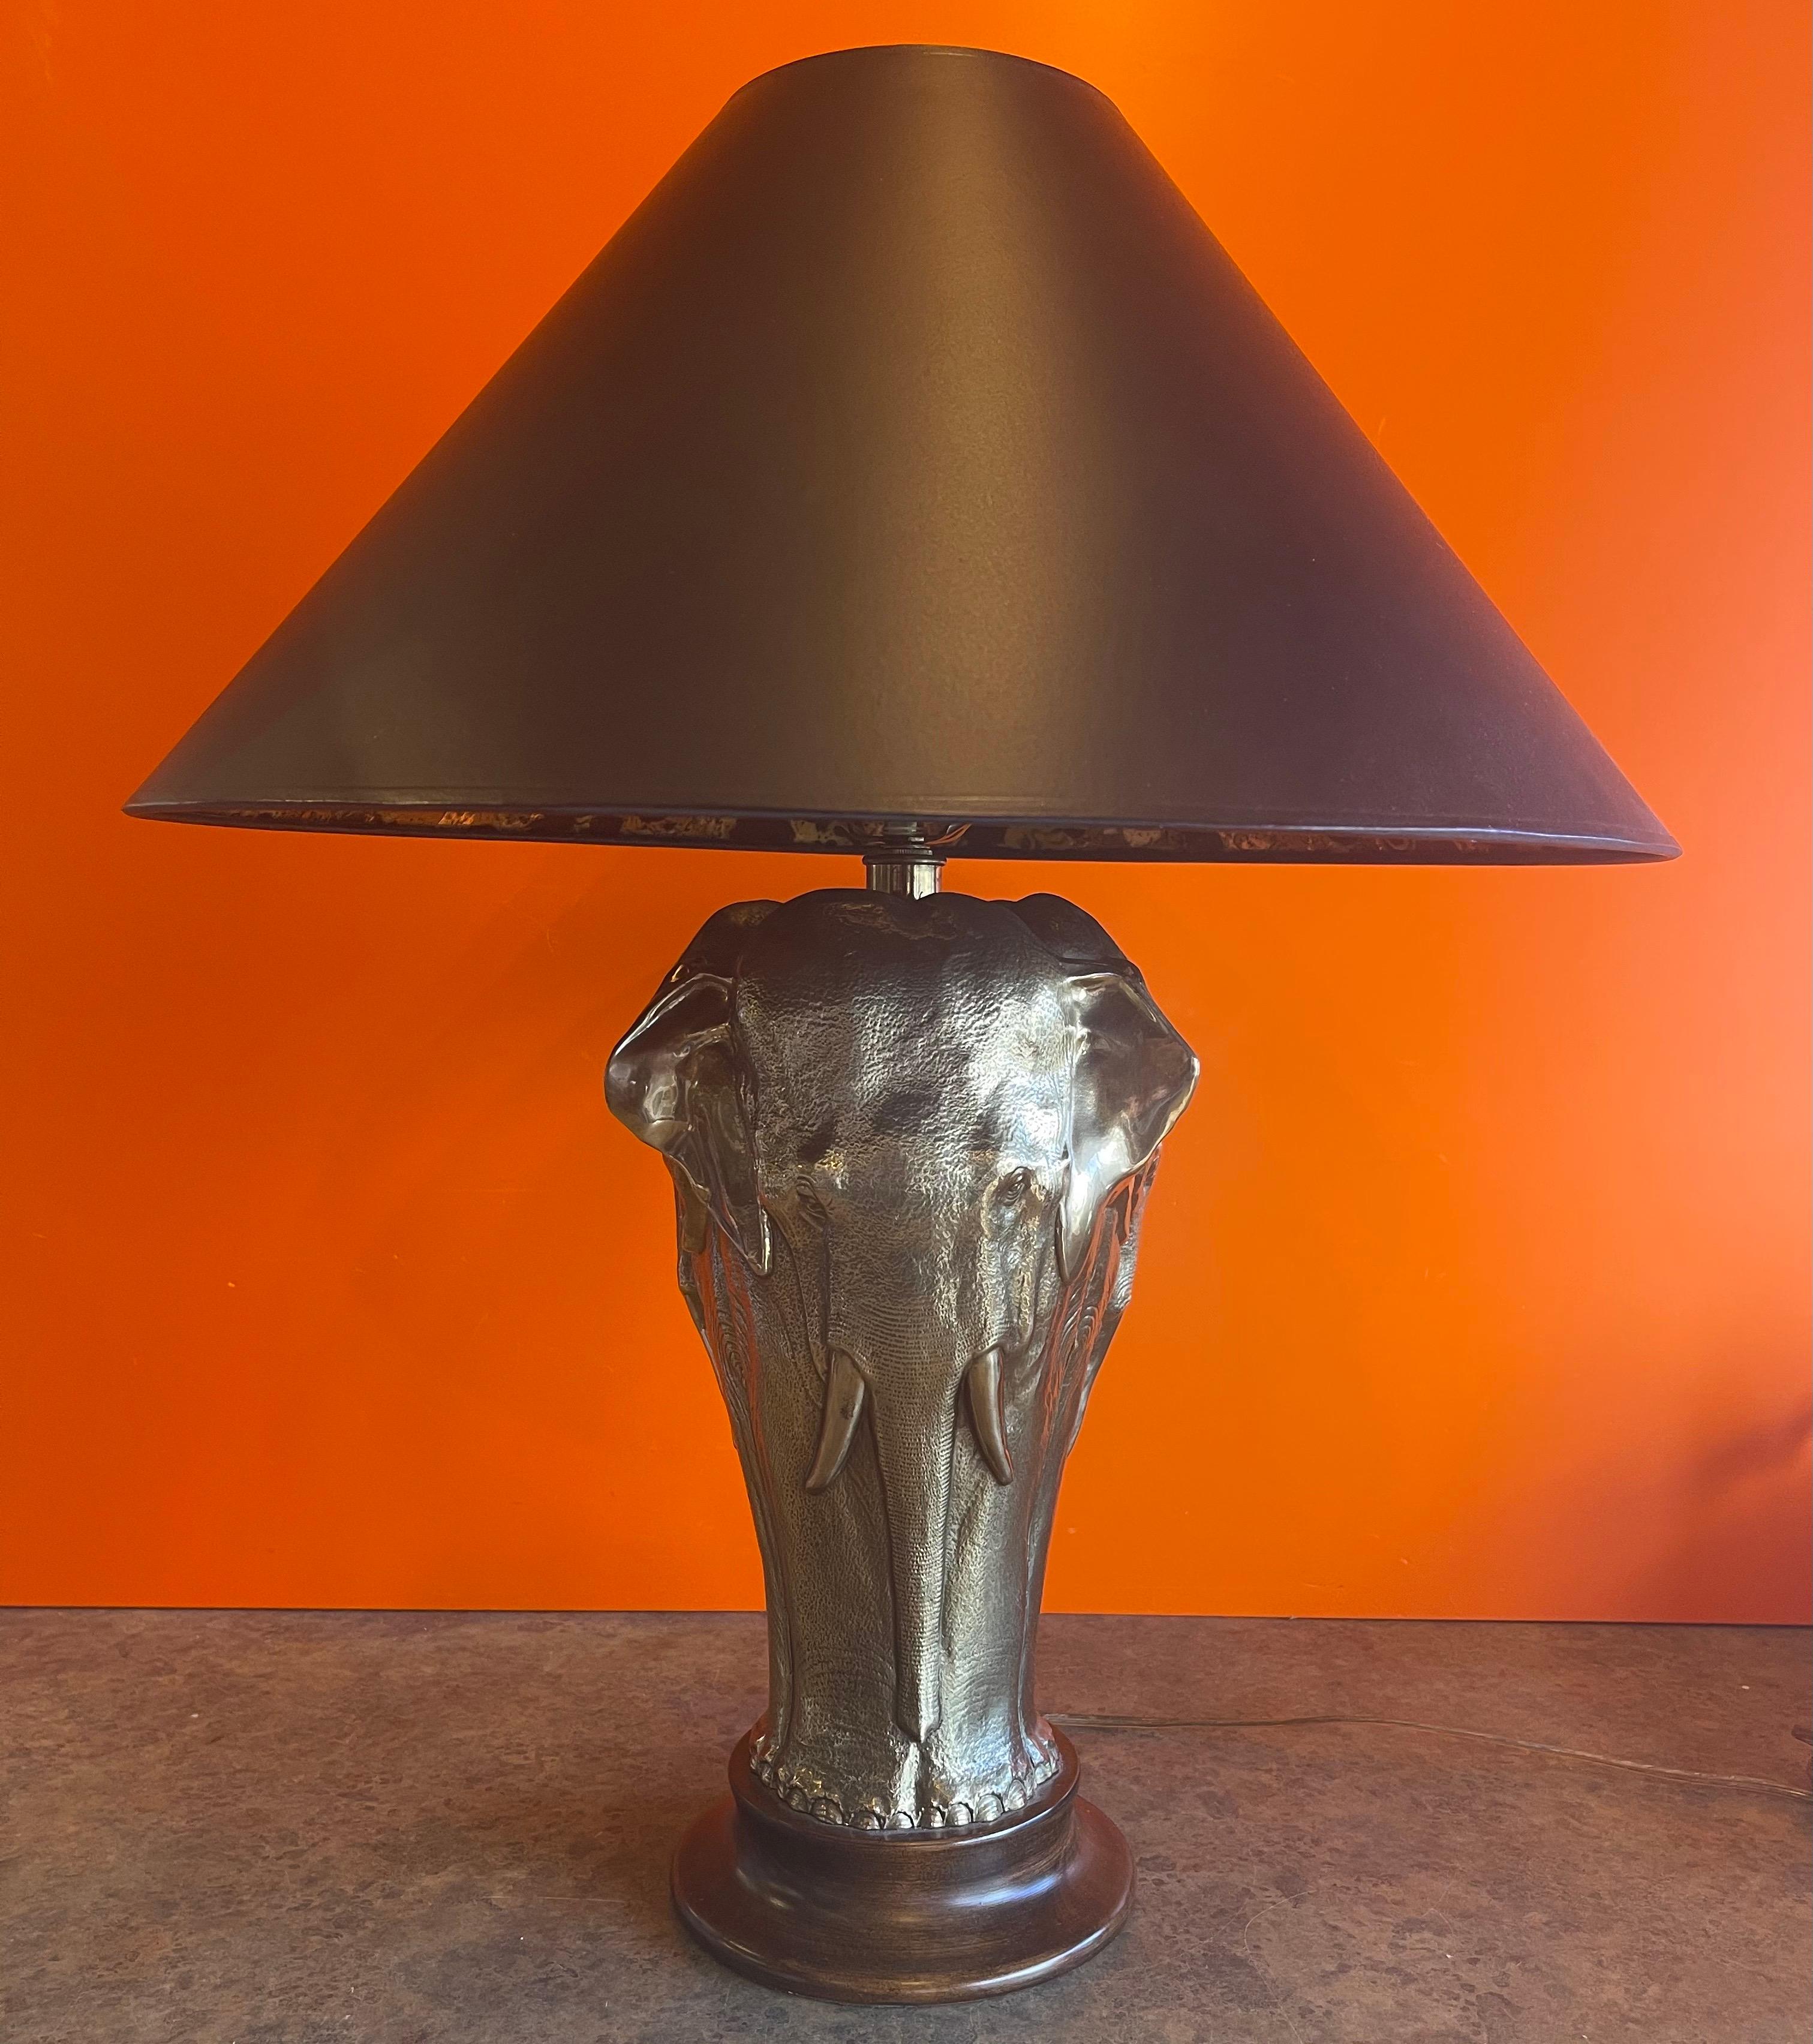 Magnifique lampe de table éléphant sculpturale en laiton sur base ronde en bois par Tyndale pour Frederick Cooper Lamp Co. de Chicago, vers les années 1970. La lampe présente un éléphant en laiton répété également autour de la base en bois avec